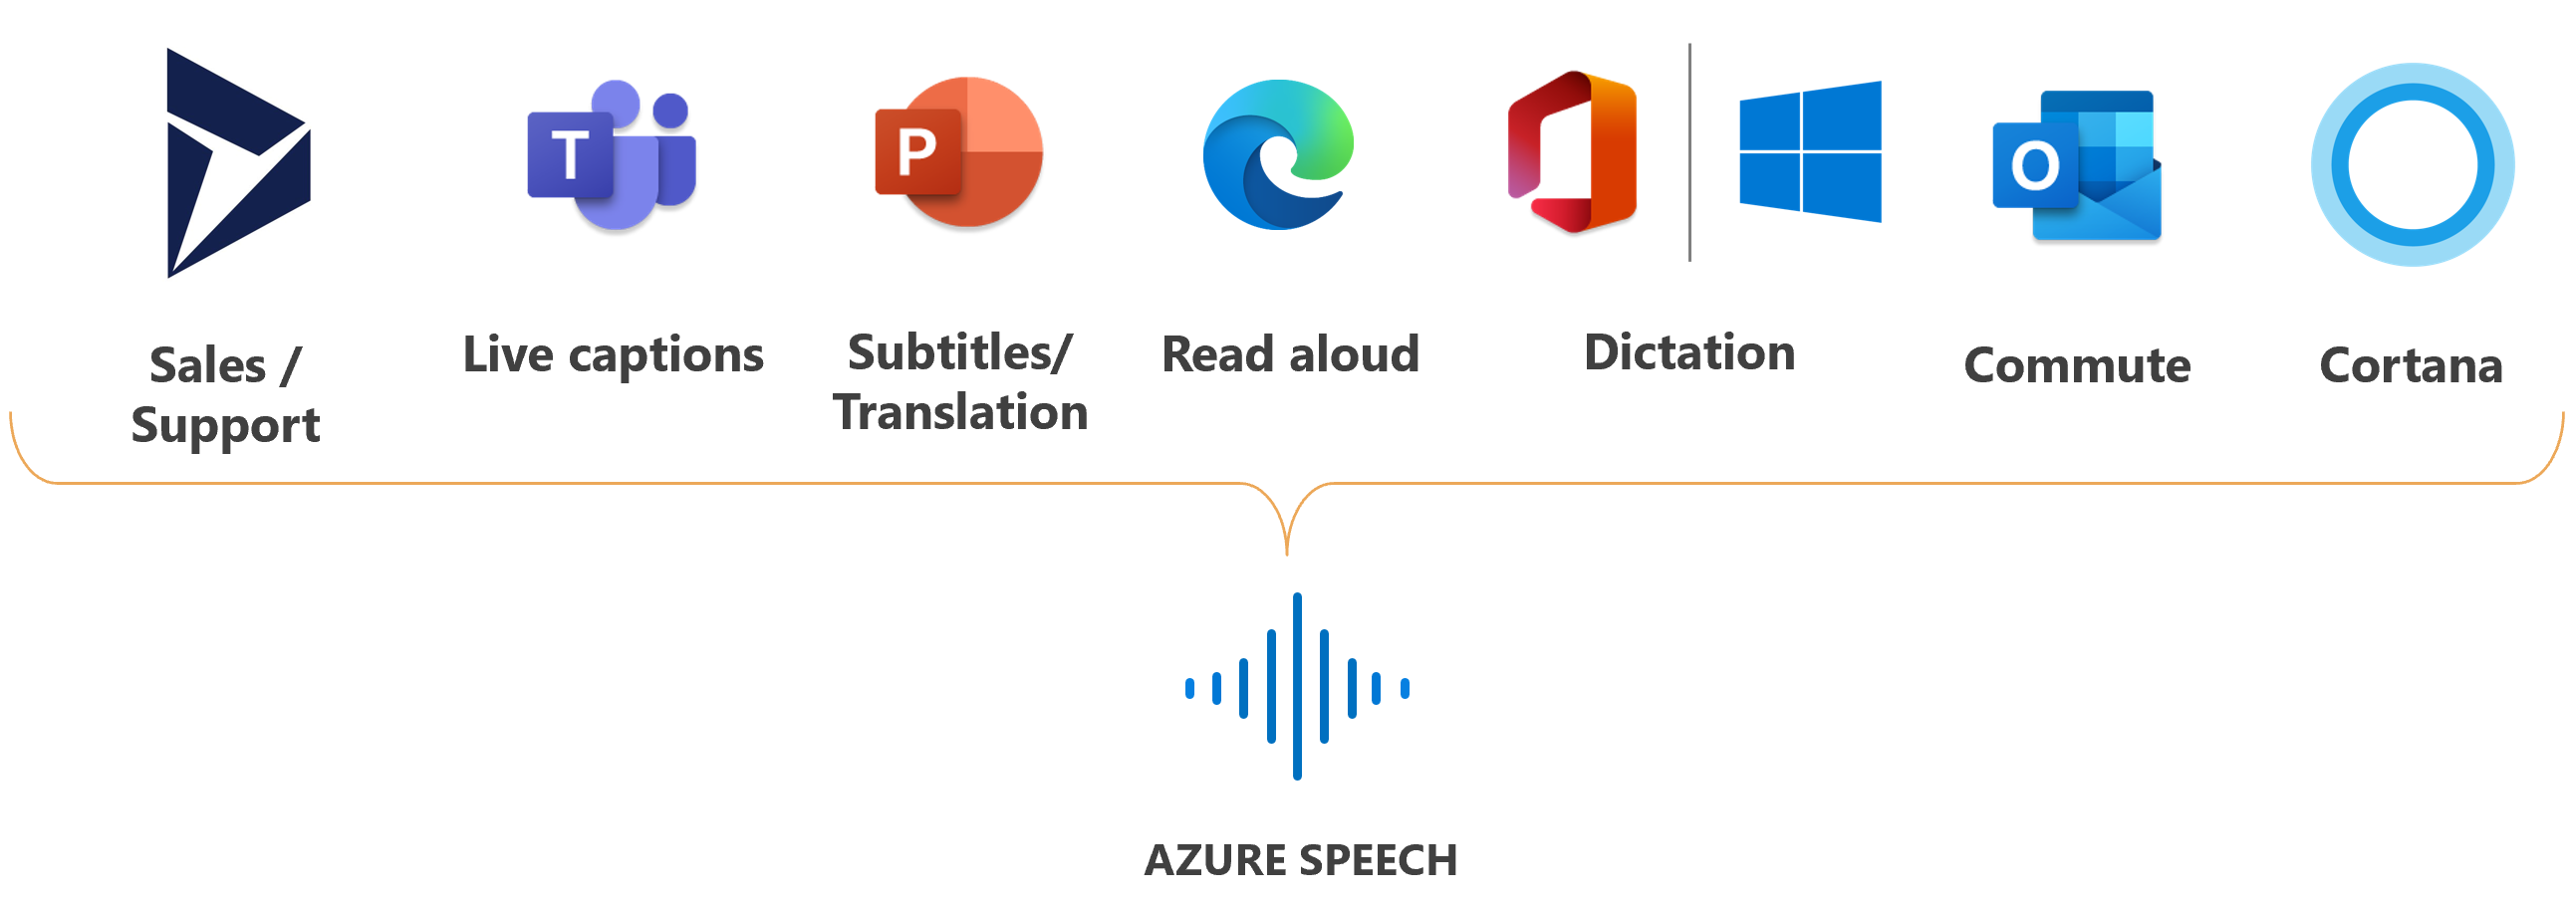 Speech Service를 사용하는 Microsoft 제품의 로고를 보여 주는 이미지